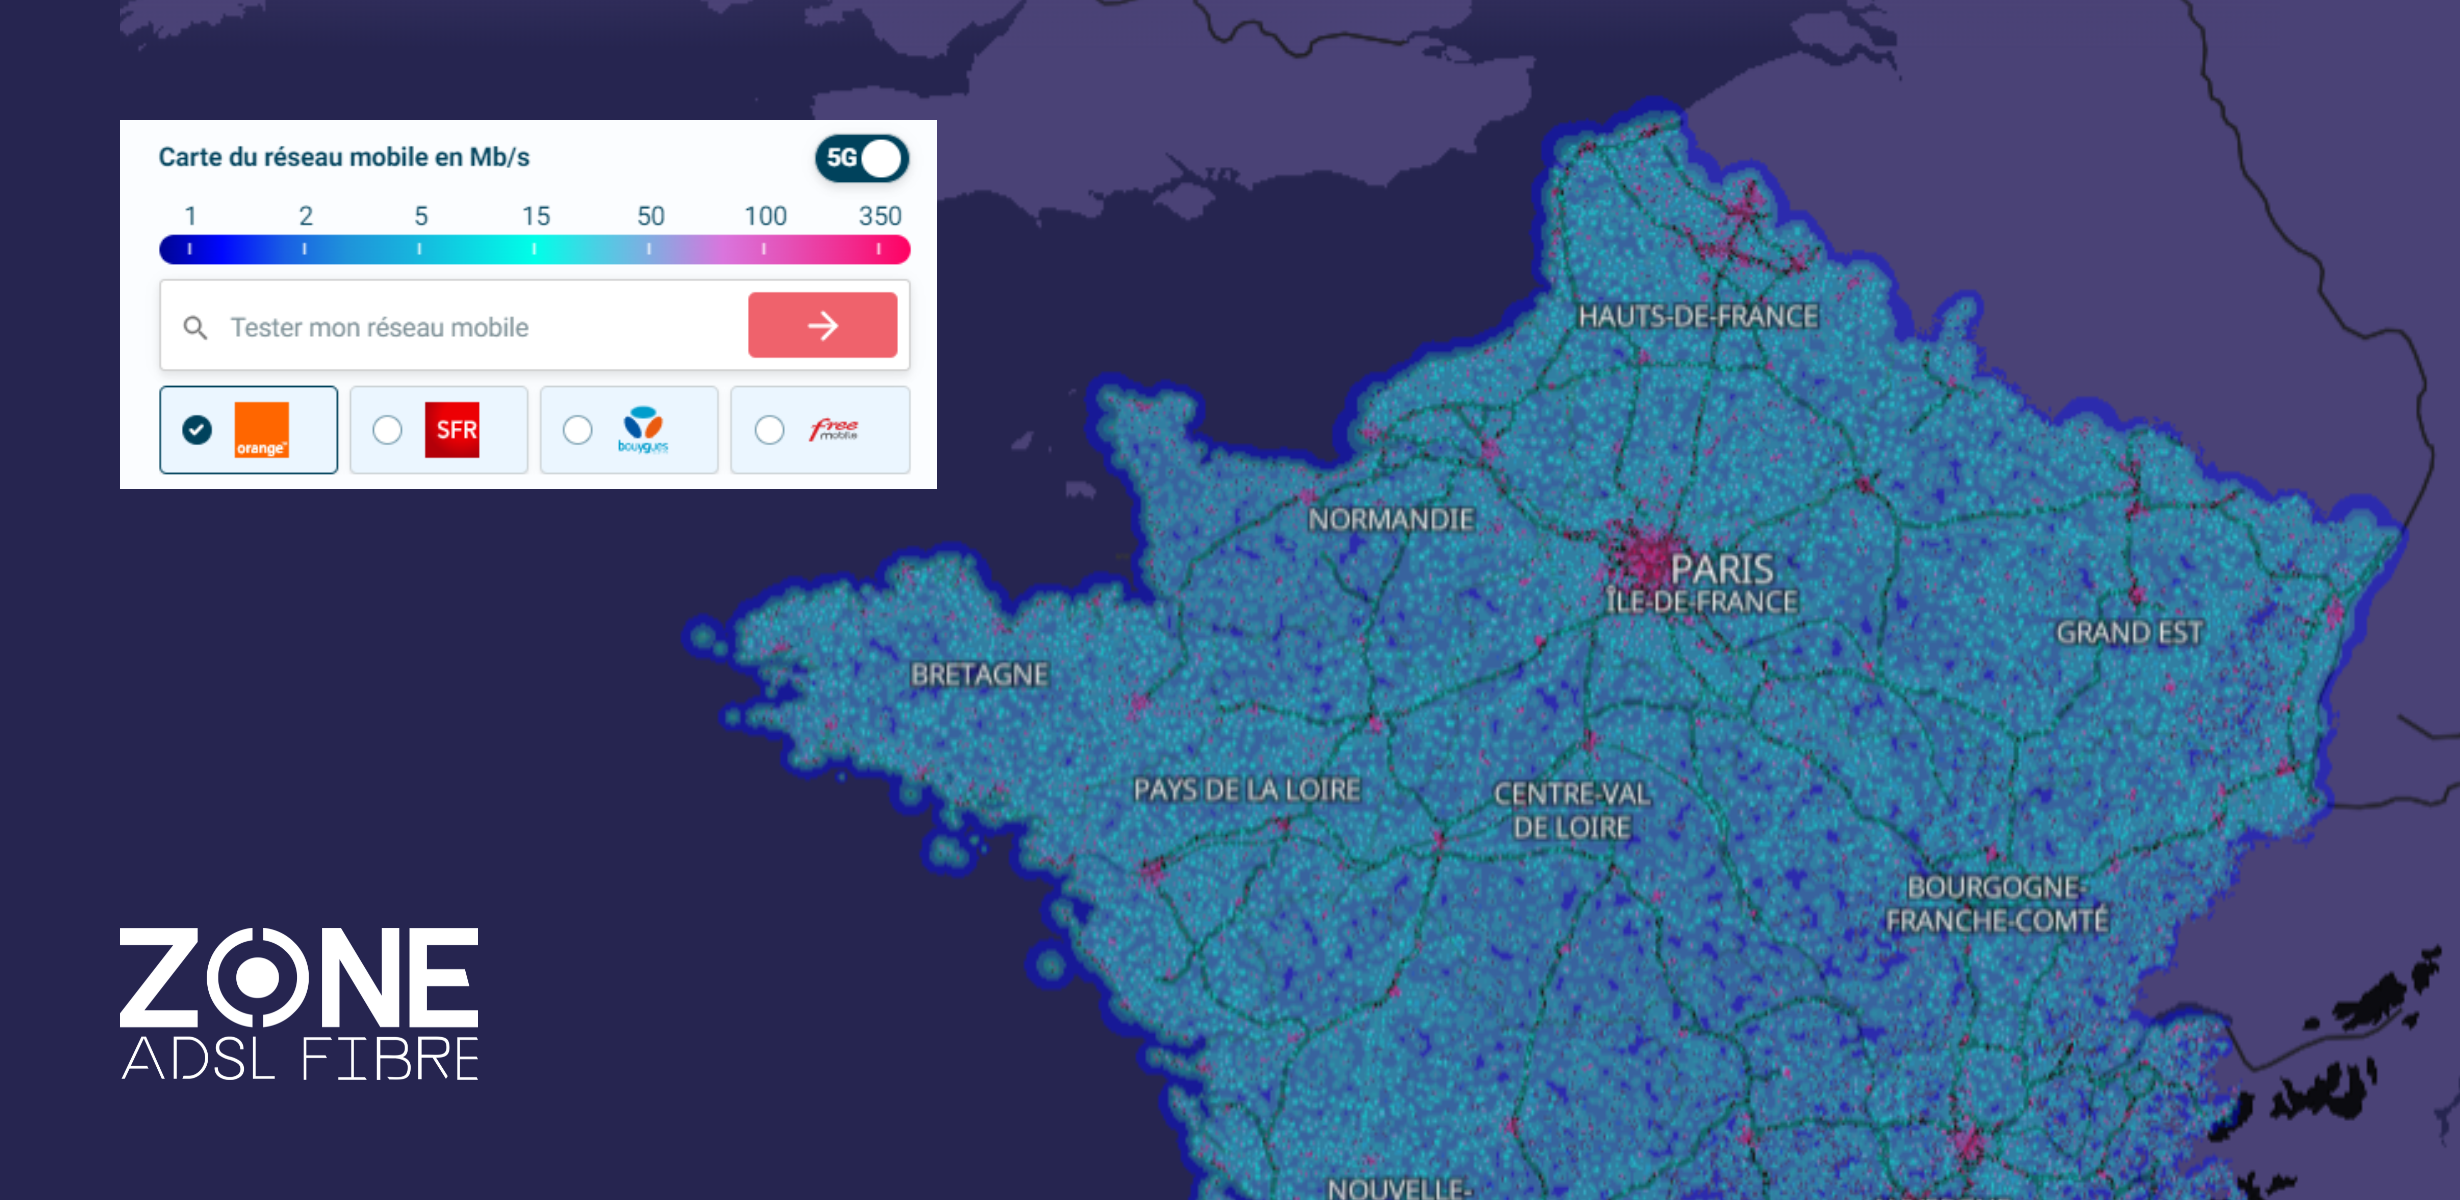 Couverture 4G et 5G au Liège 37460 - Carte réseau mobile